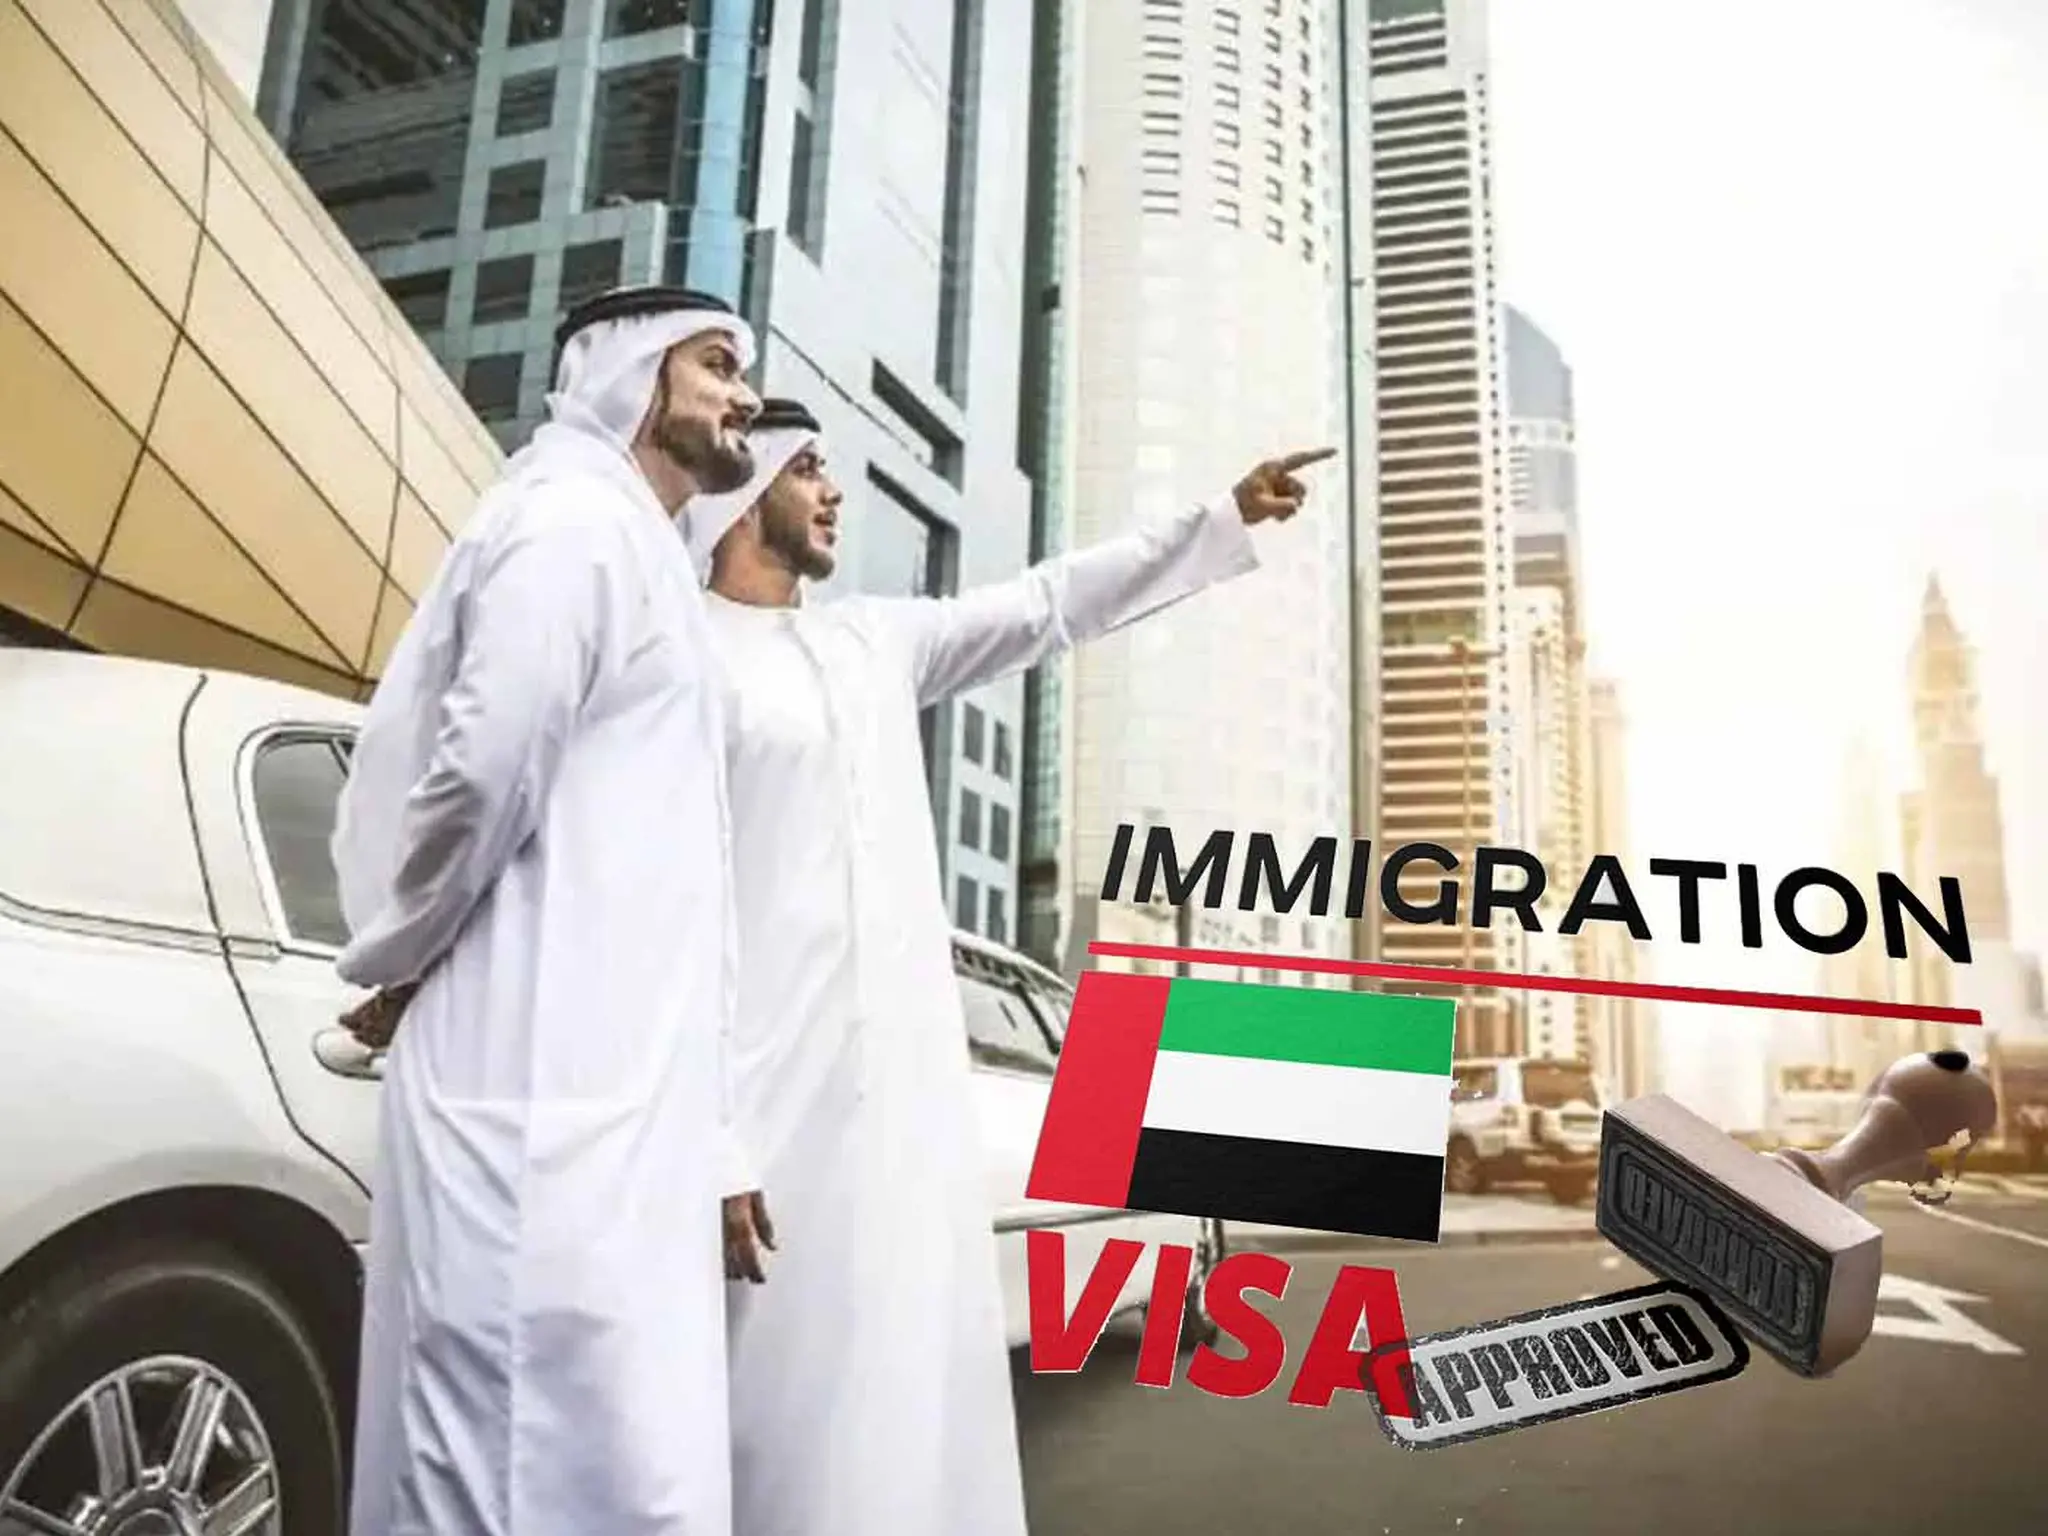 New UAE permanent residency visas cost 16,500 dirhams per year